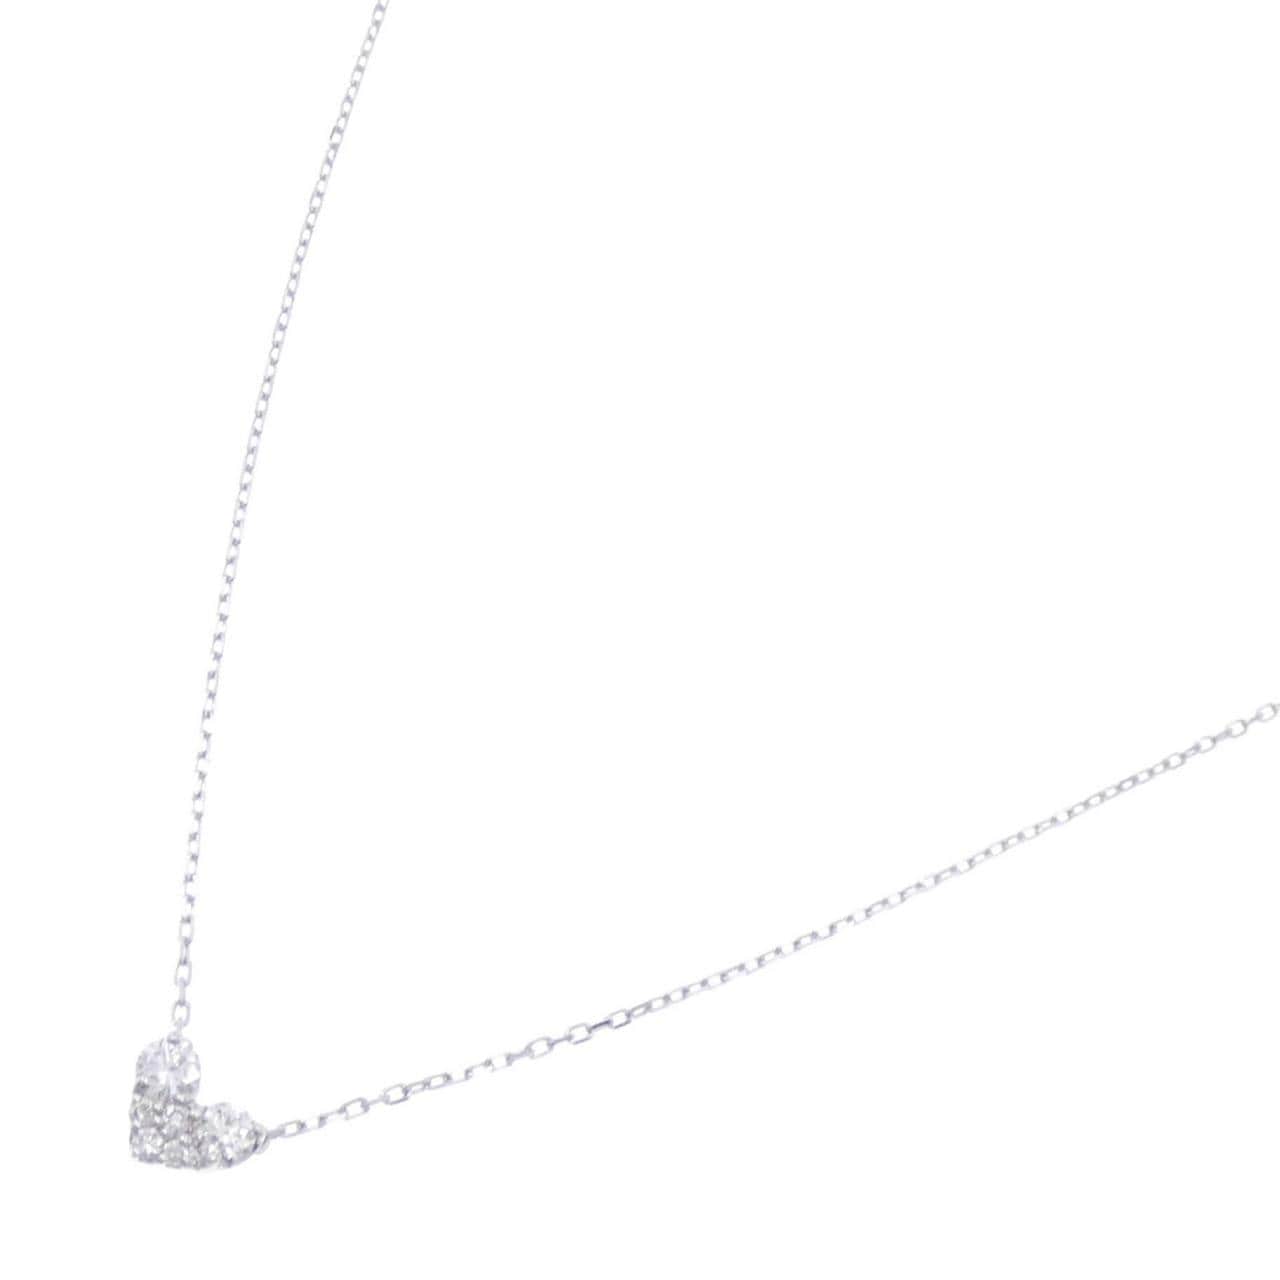 PONTE VECCHIO Heart Necklace 0.14CT